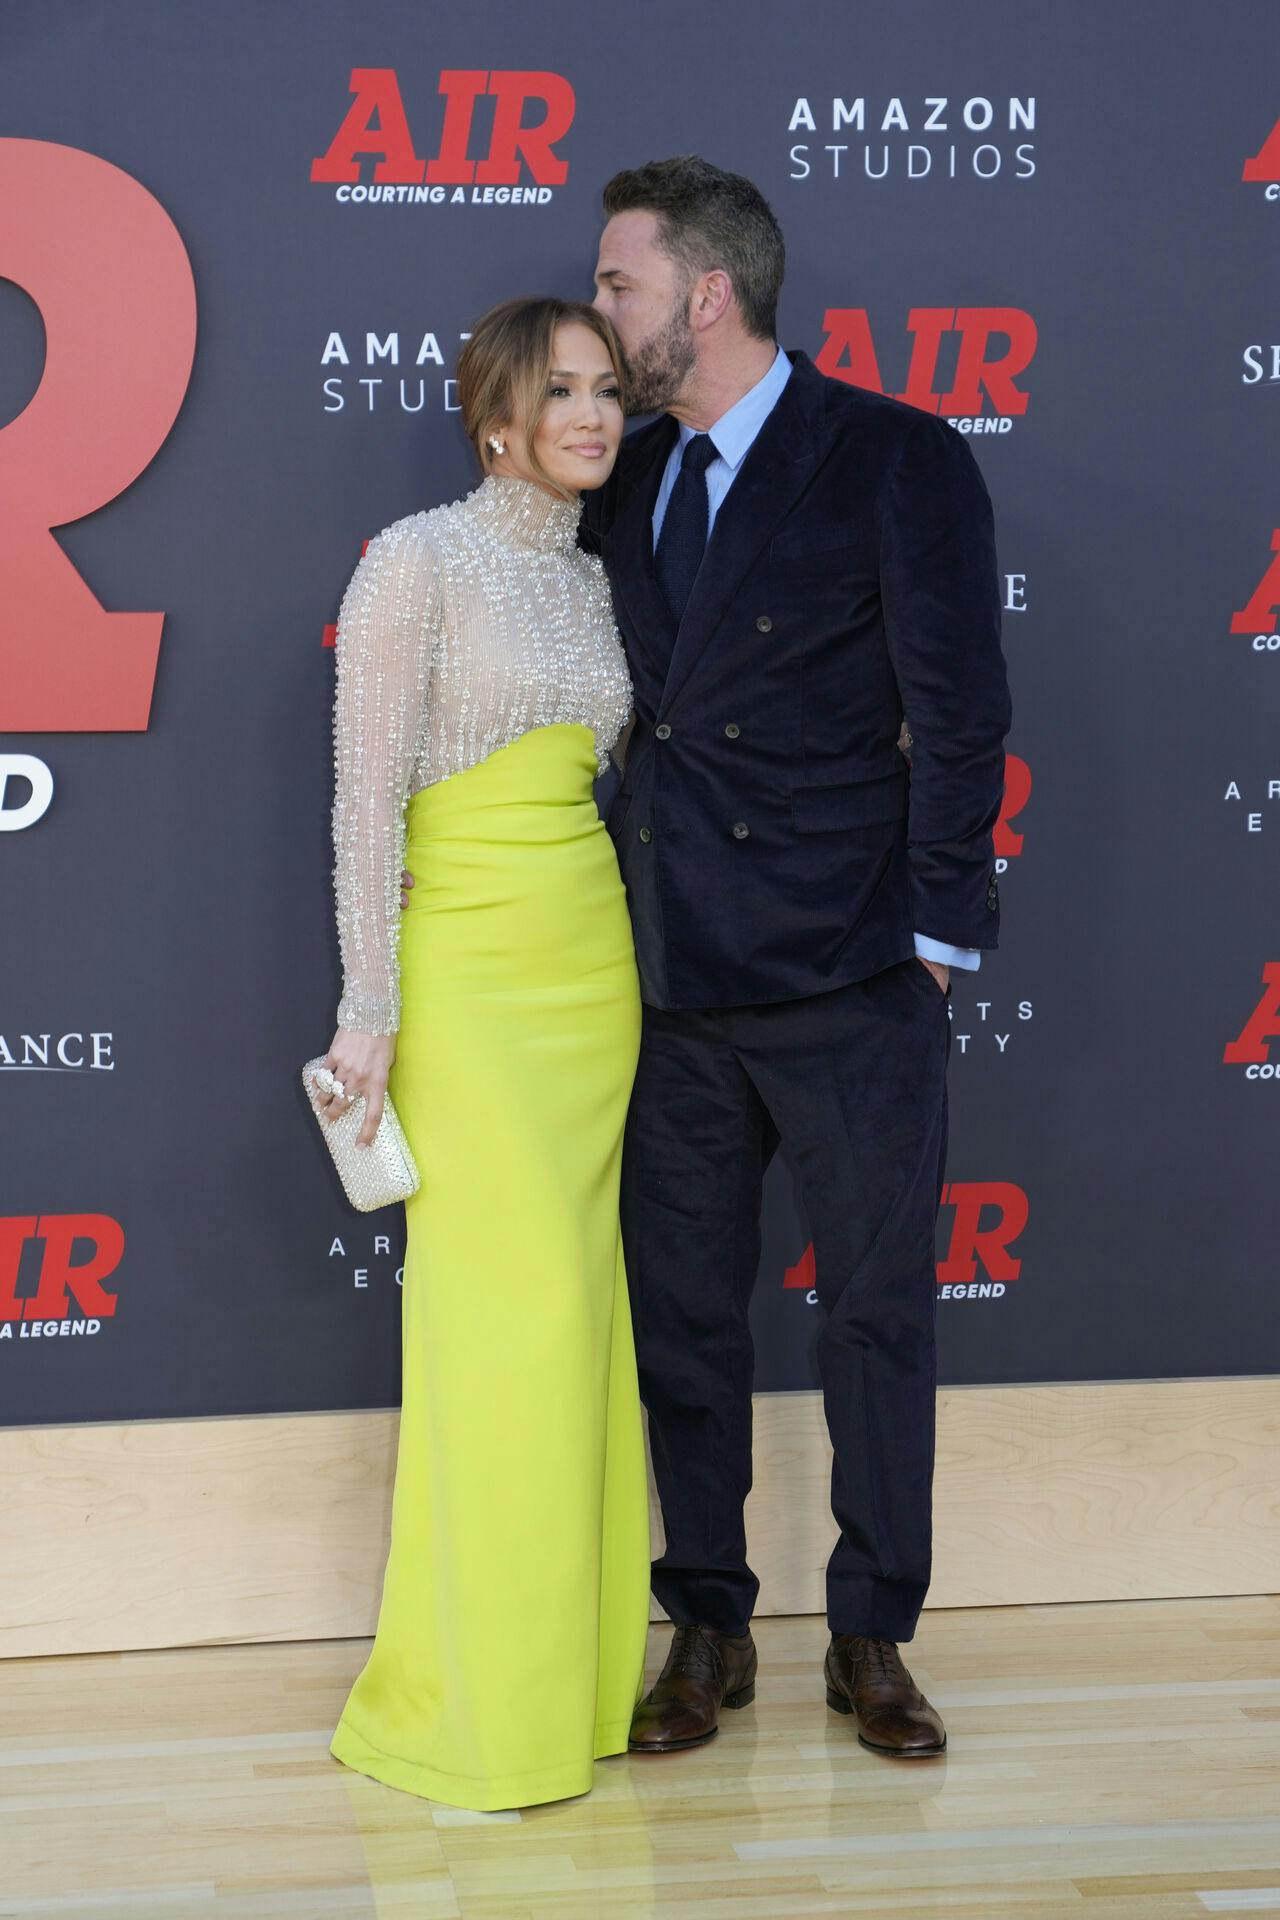 Bennifer til mandagens premiere på Ben Afflecks nye film "Air".
